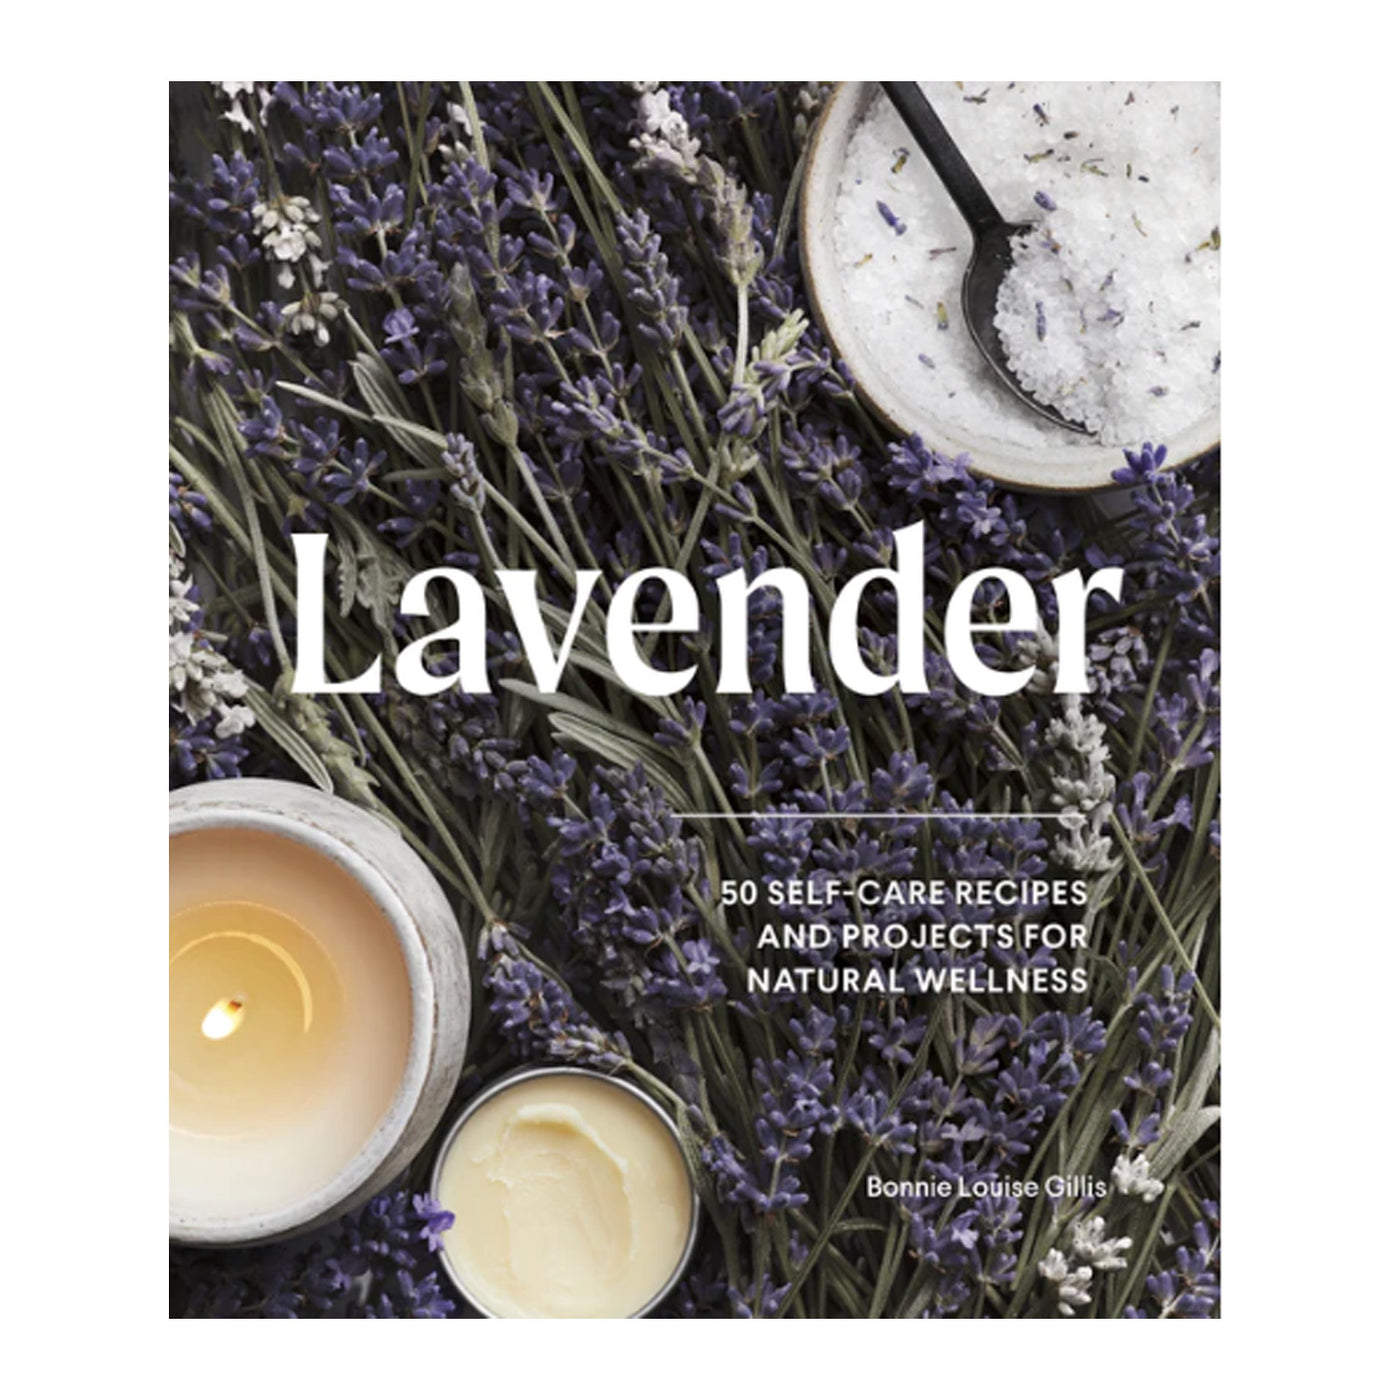 Book titled Lavender